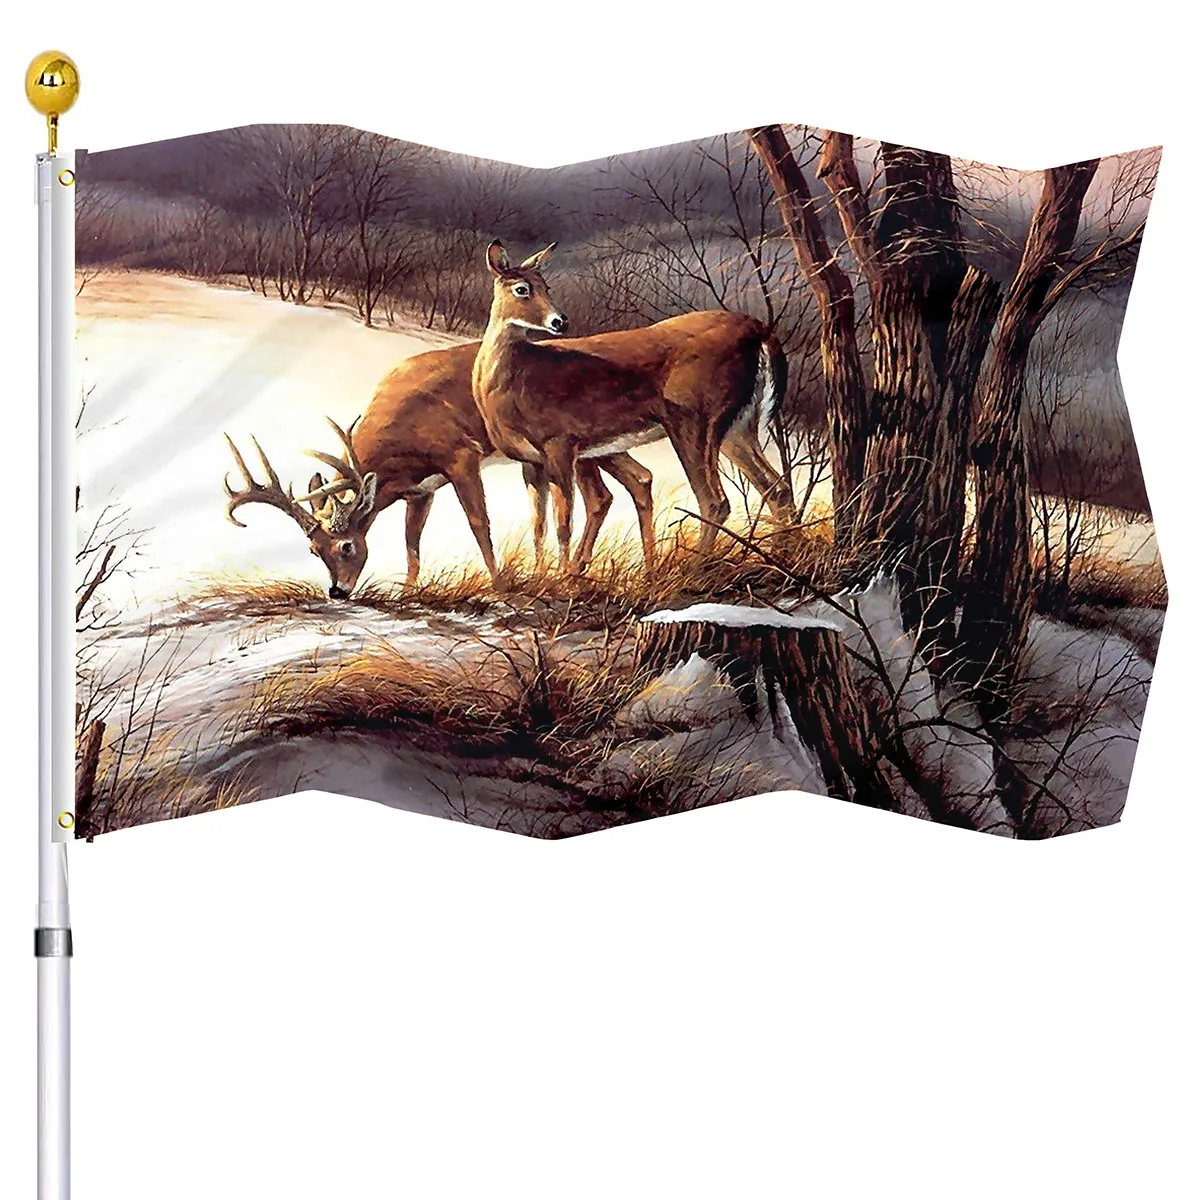 Görüntü /176324-Vahşi-geyik-bayrağı-ev-partisi-dekorasyon-için_cdn/share-5.jpeg